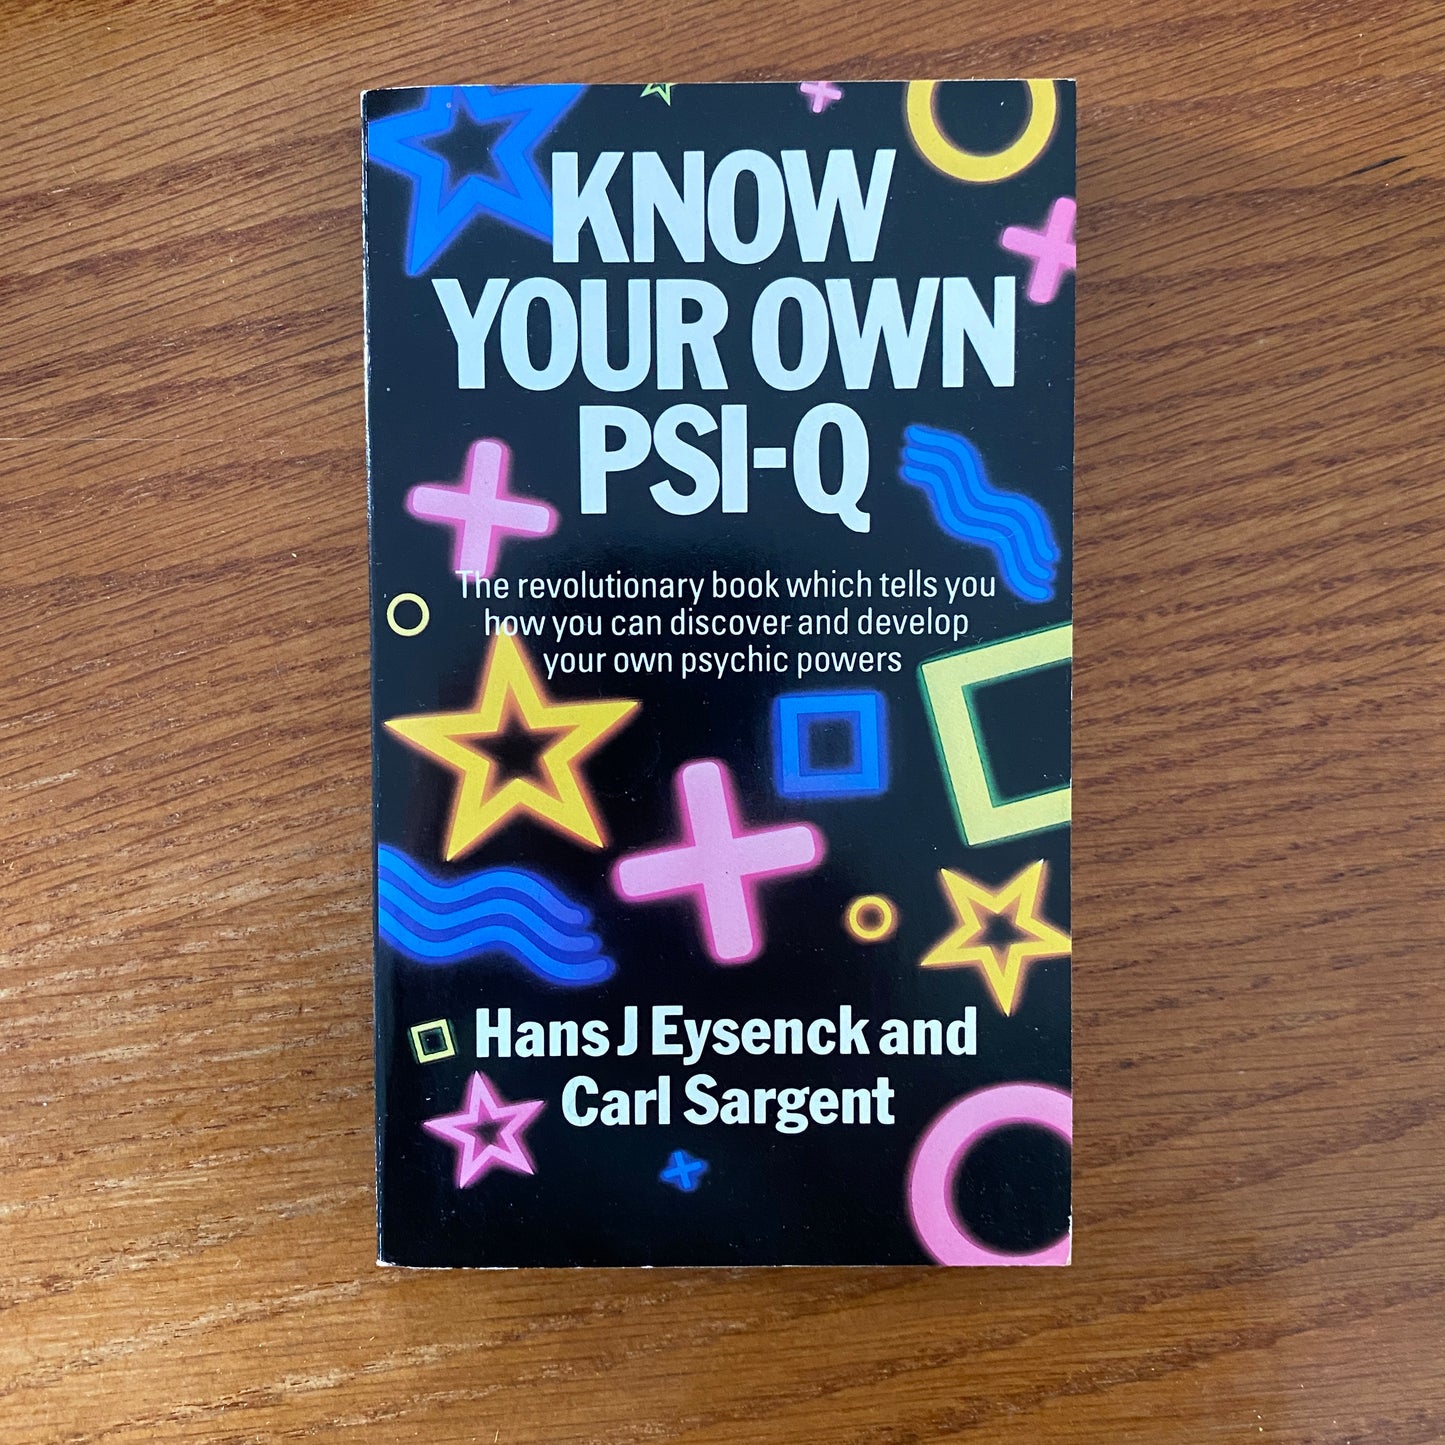 Know Your PSI-Q - Carl Sargent & Hans J. Eysenck